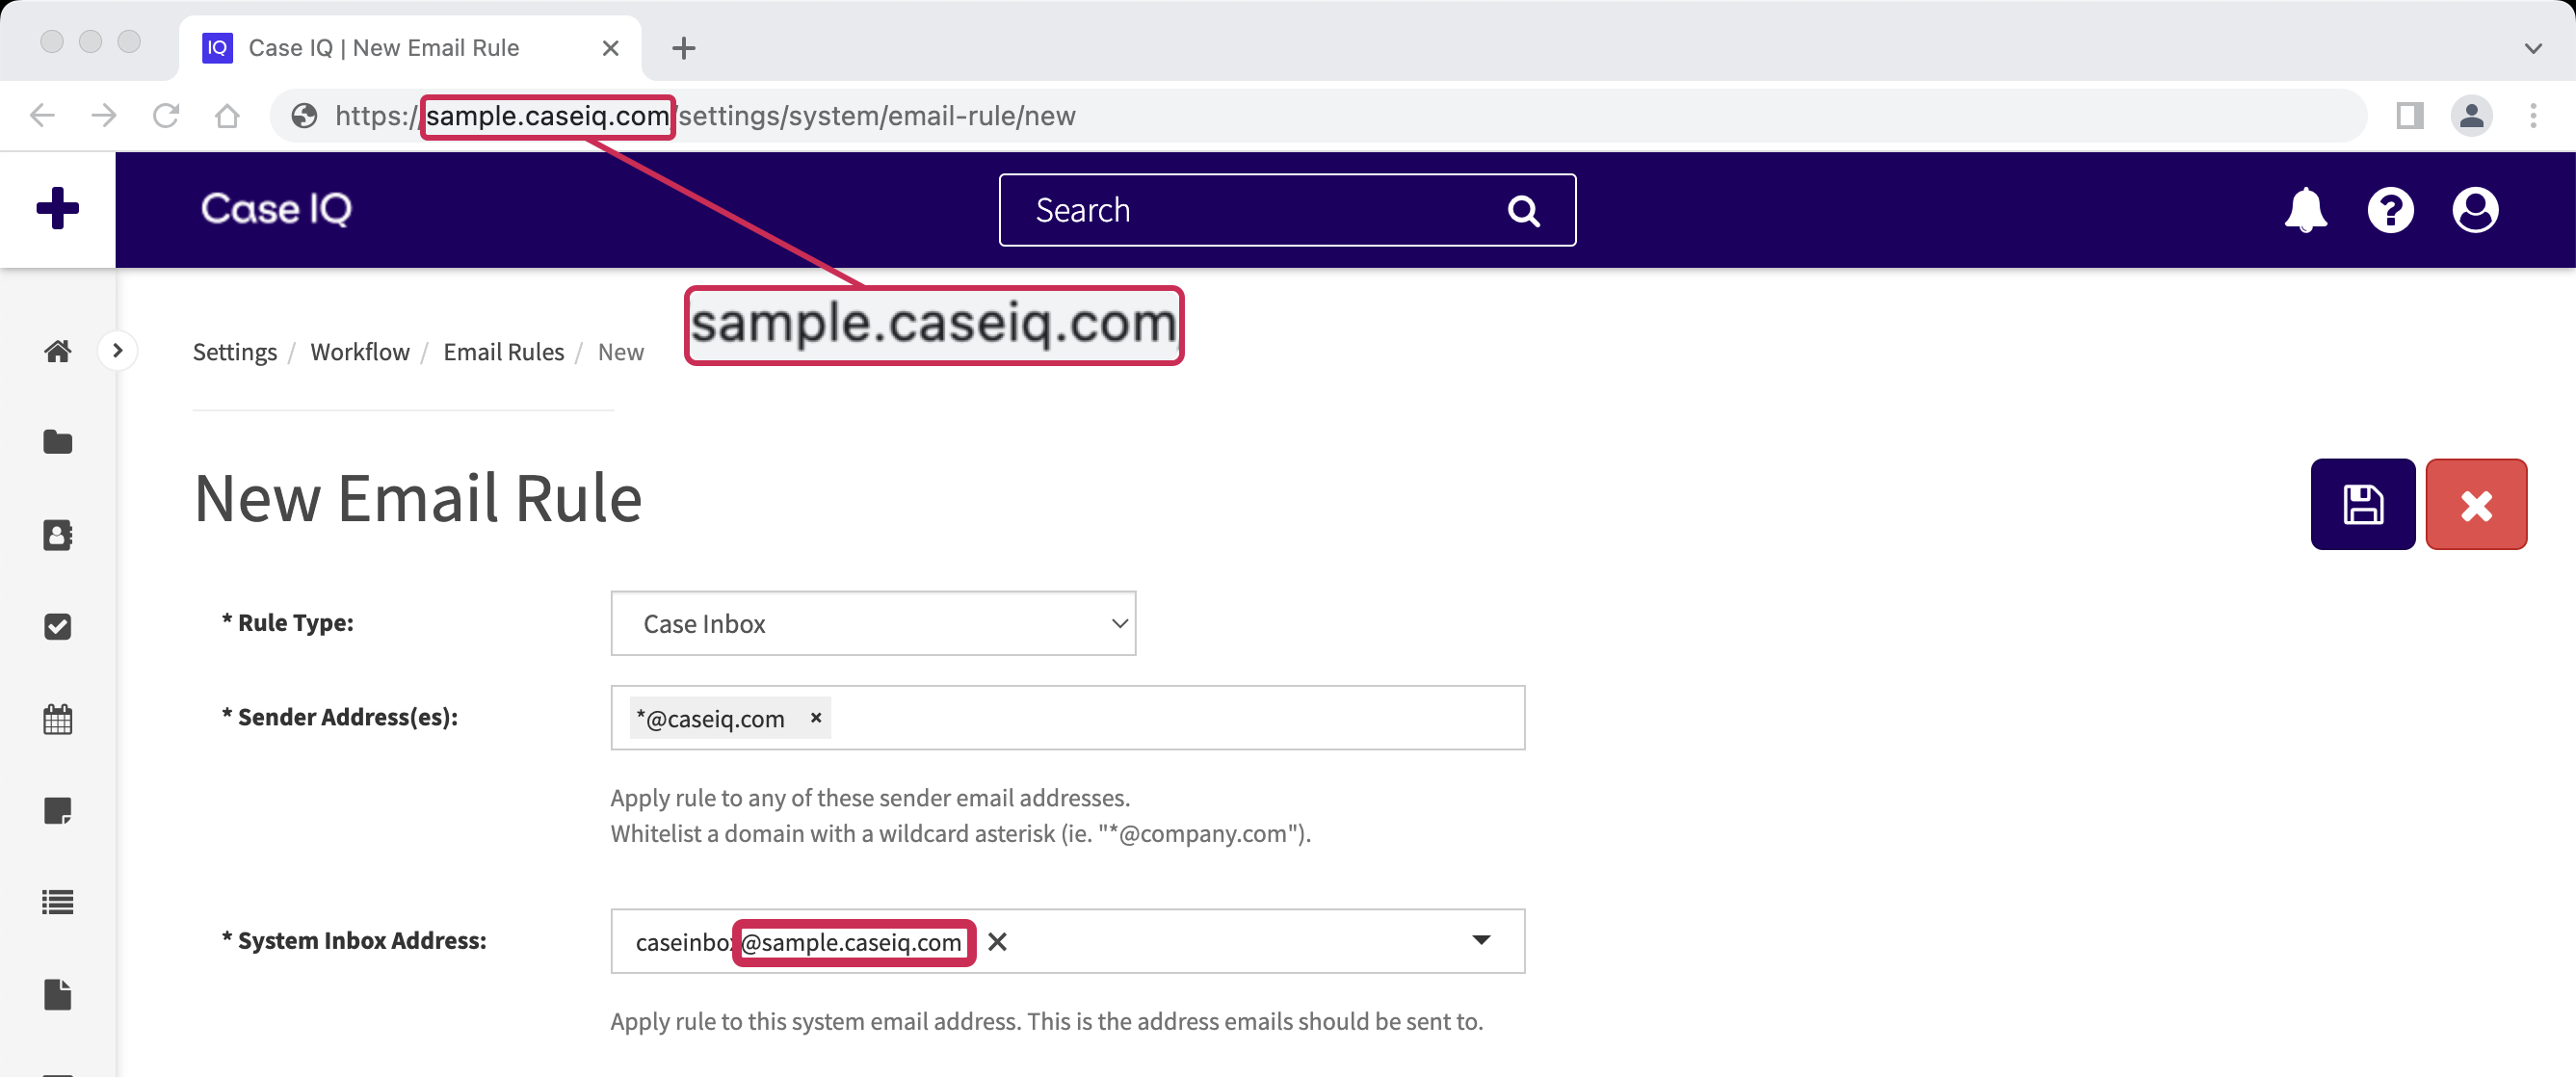 Le texte suivant est mis en surbrillance dans la barre d'URL et dans le champ Adresse de la boîte de réception du système : « sample.caseiq.com ».